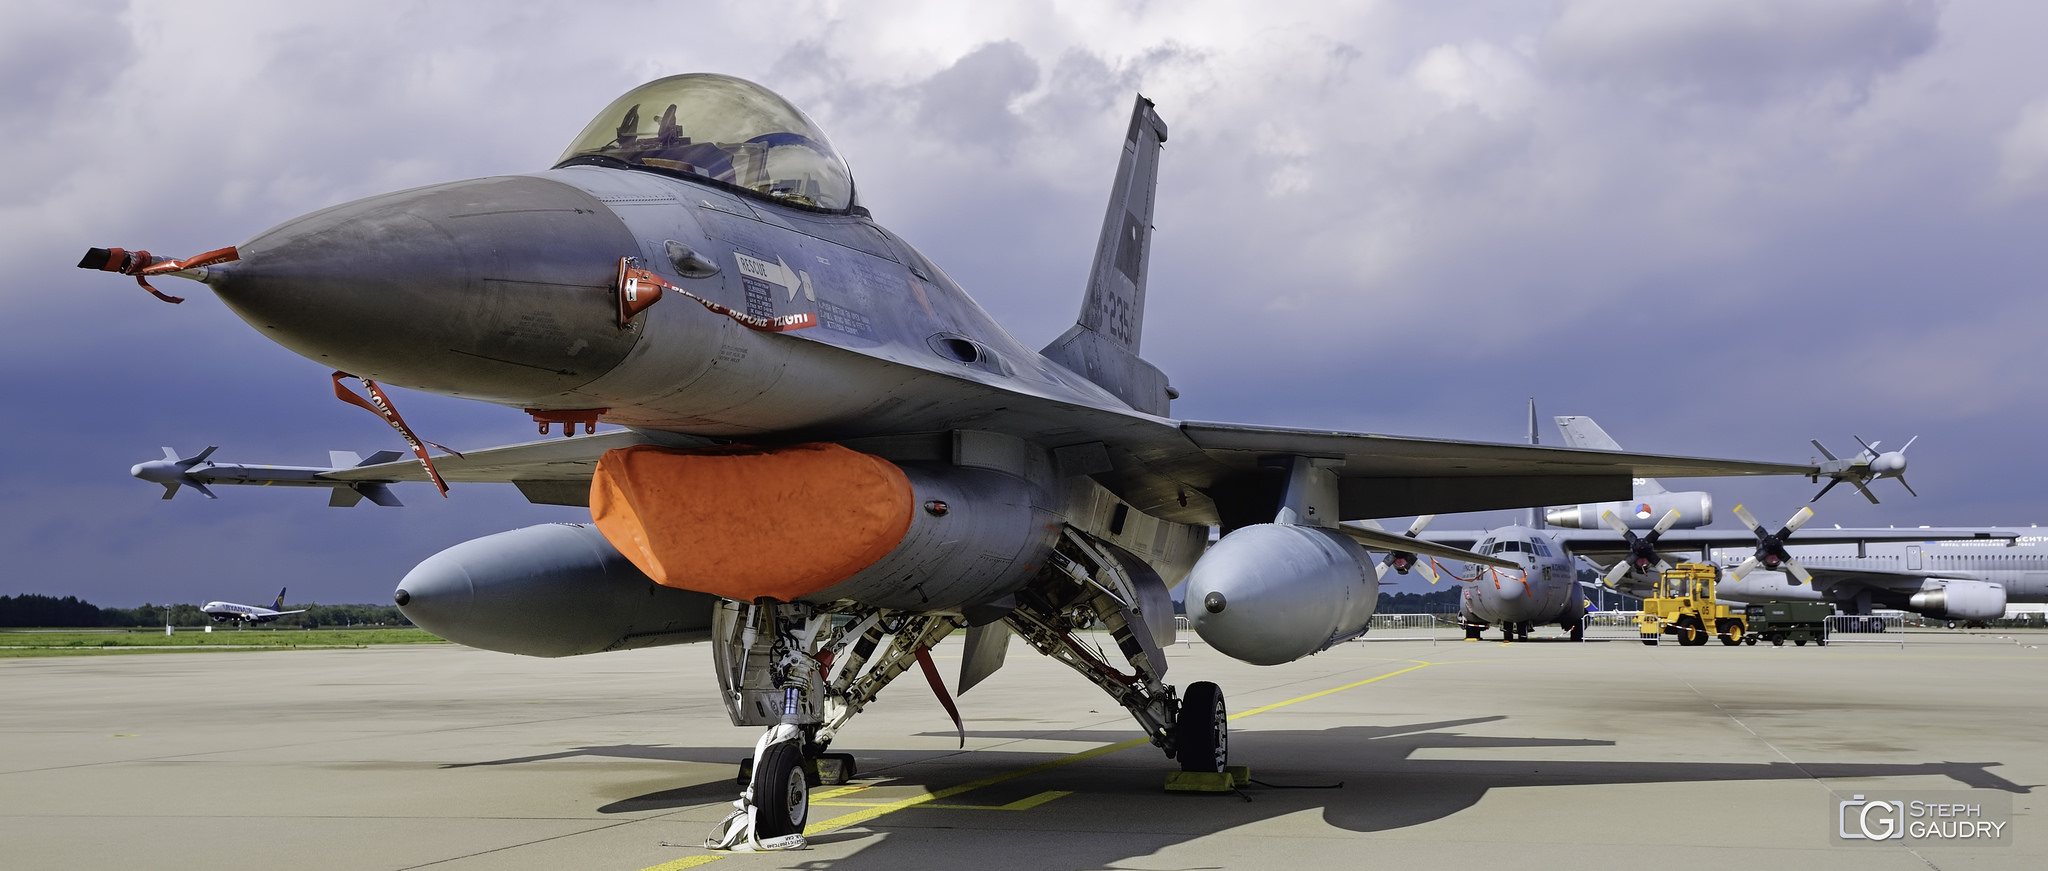 F-16 Fighting Falcon + C130 - KDC10